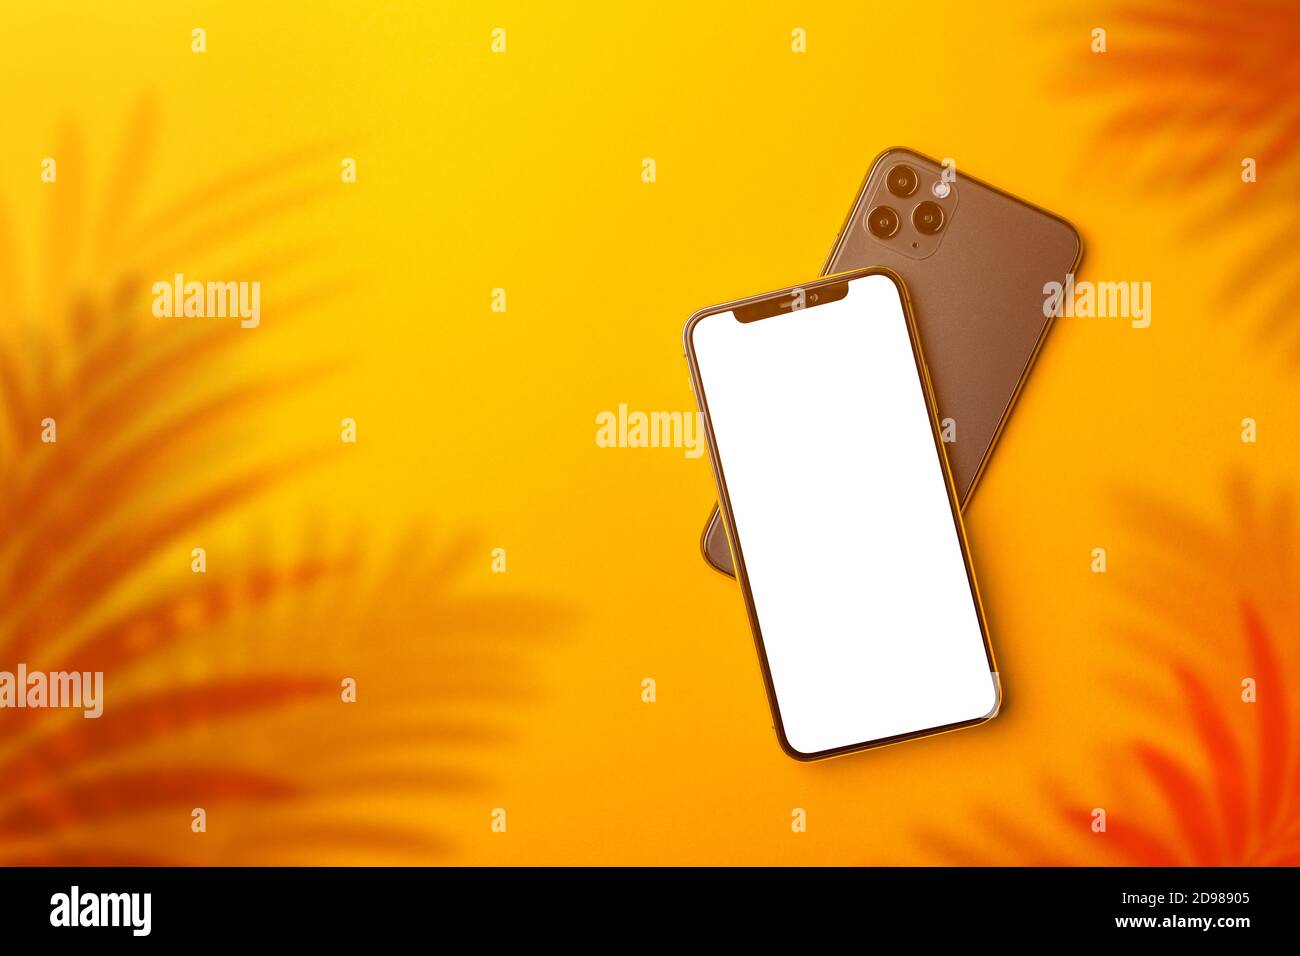 Smartphone mockup schermo vuoto con le ombre delle foglie di palma per i temi della stagione estiva, display bianco pulito del telefono cellulare Foto Stock